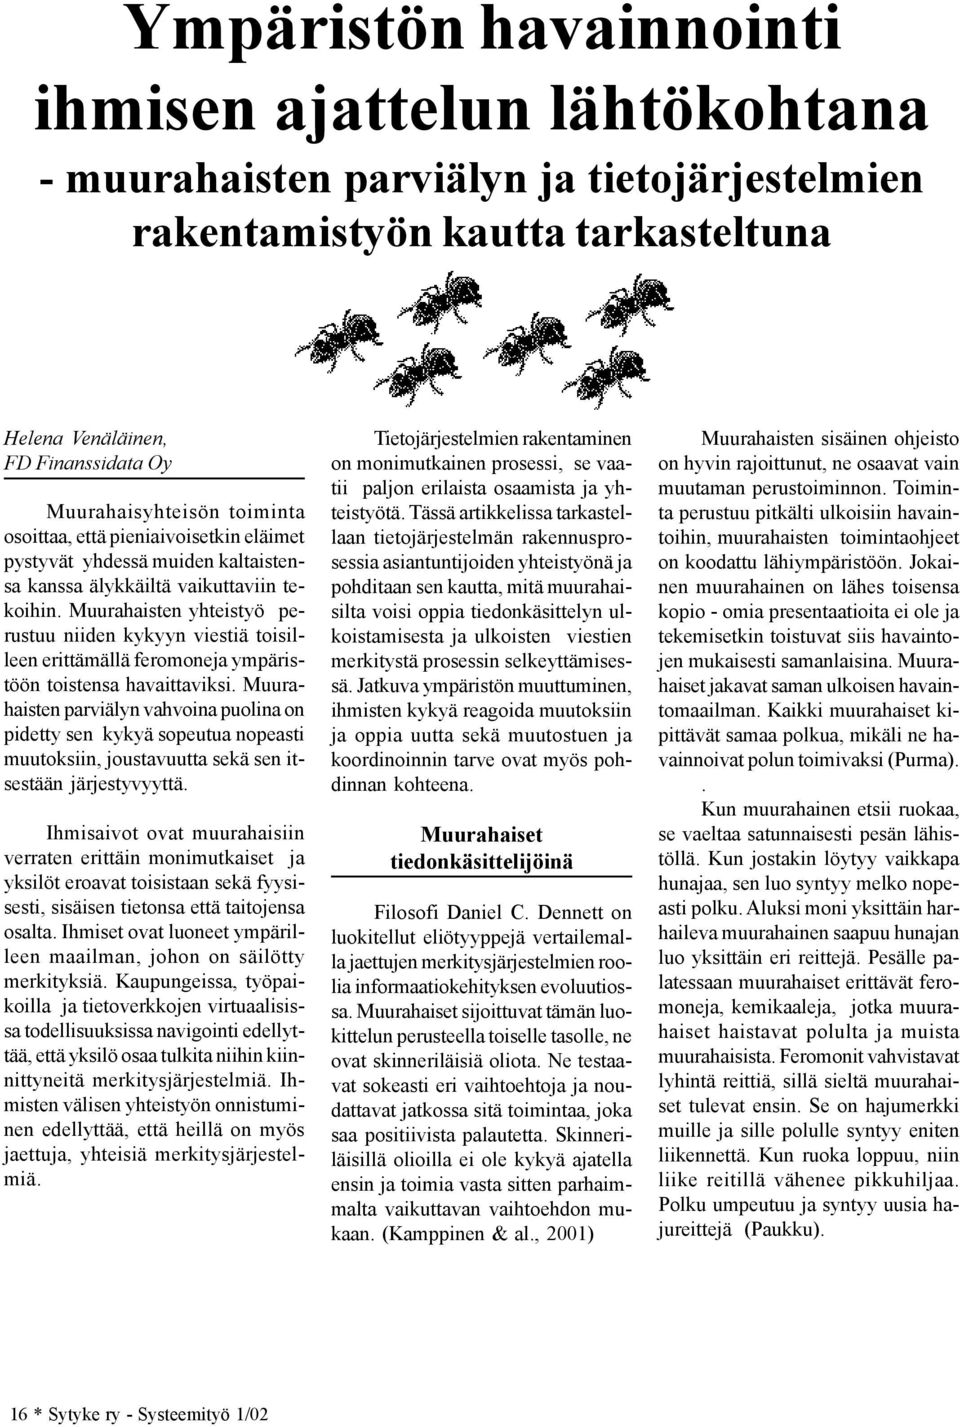 Muurahaisten yhteistyö perustuu niiden kykyyn viestiä toisilleen erittämällä feromoneja ympäristöön toistensa havaittaviksi.